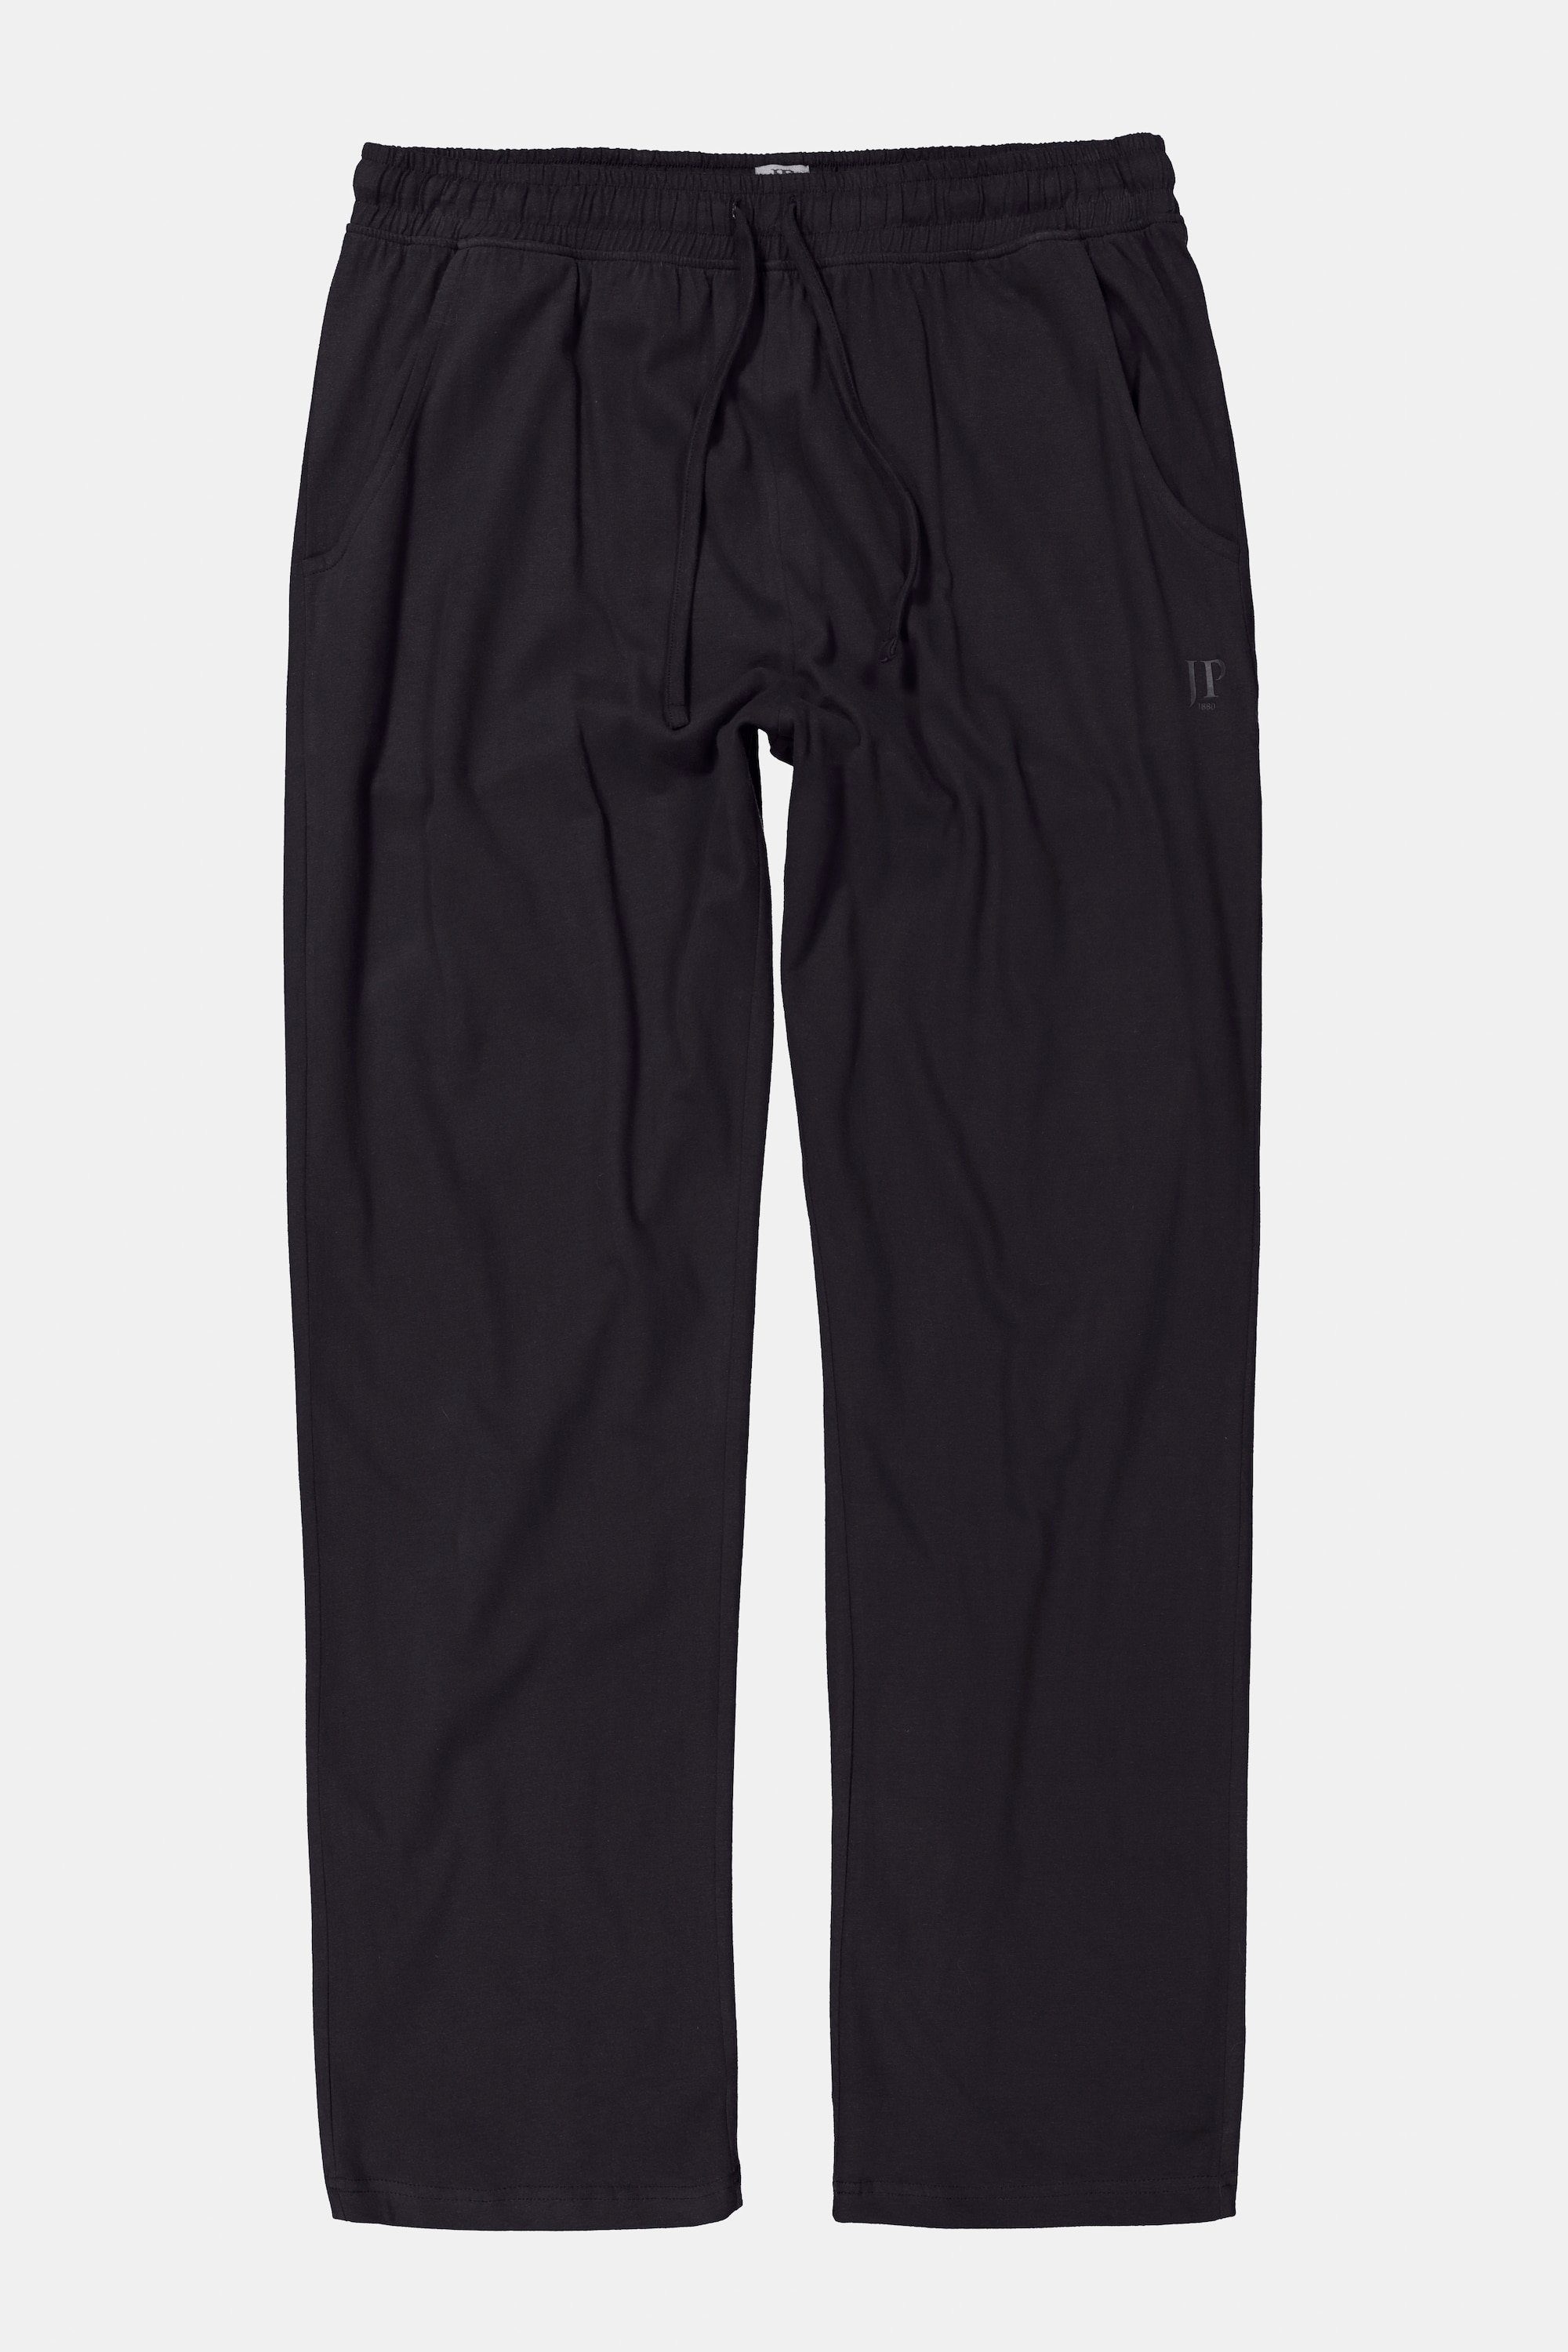 JP1880 Schlafanzug Schlafanzug-Hose Homewear lange schwarz Form Elastikbund